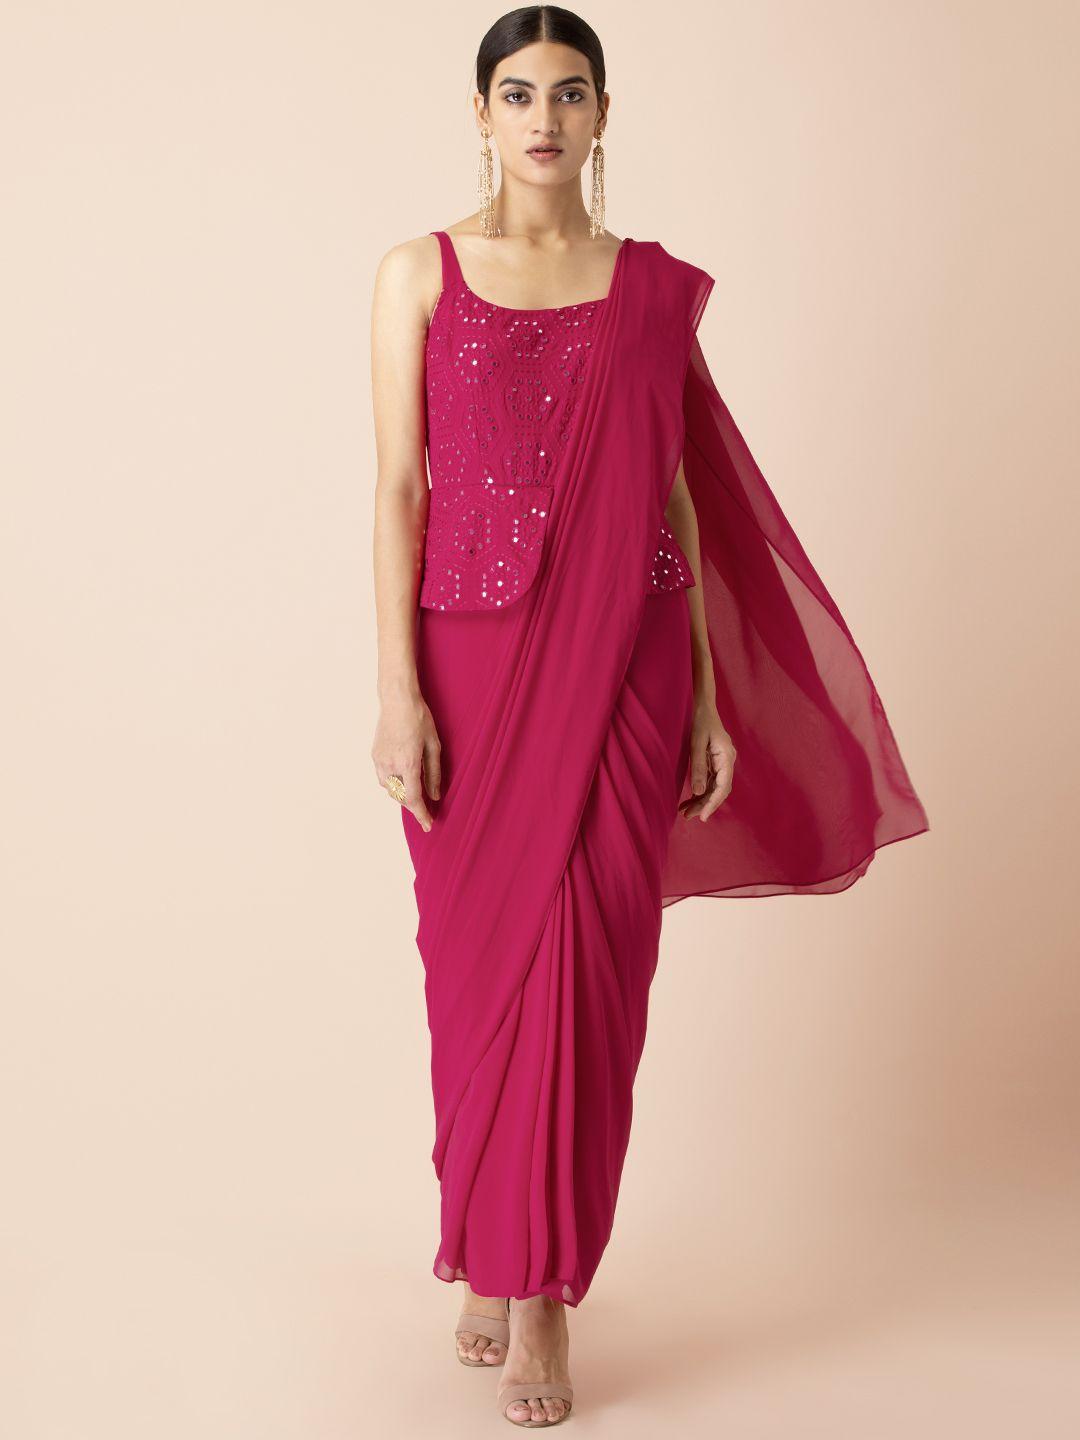 INDYA X Shraddha Kapoor Pink & White Mirror Embroidered Peplum Sari Tunic